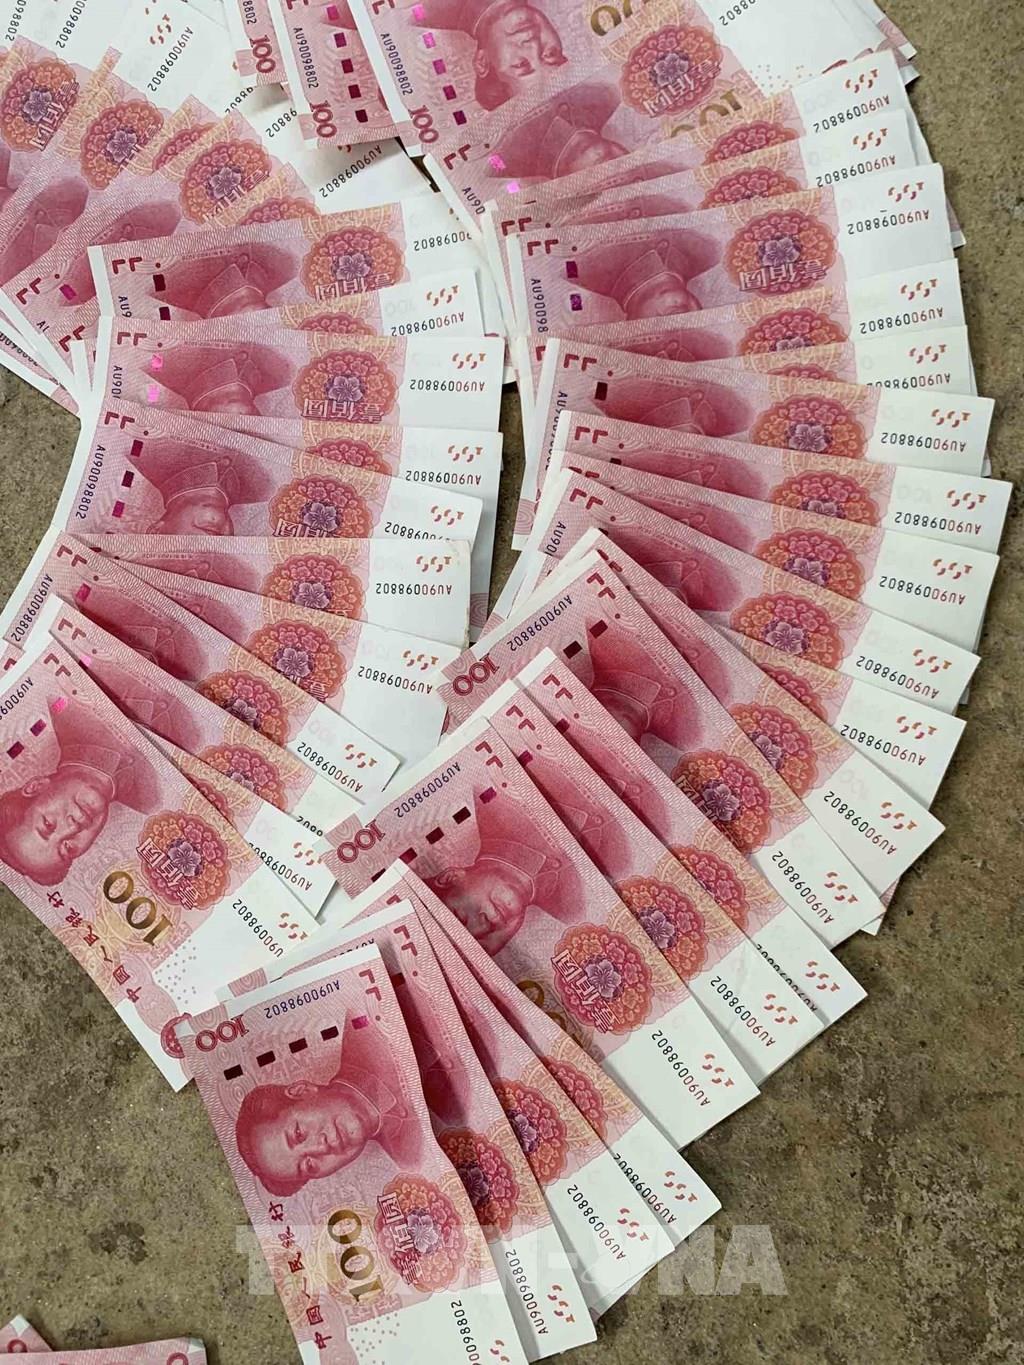 Bộ sưu tập hình ảnh tiền Trung Quốc chất lượng 4K với hơn 999+ hình ảnh